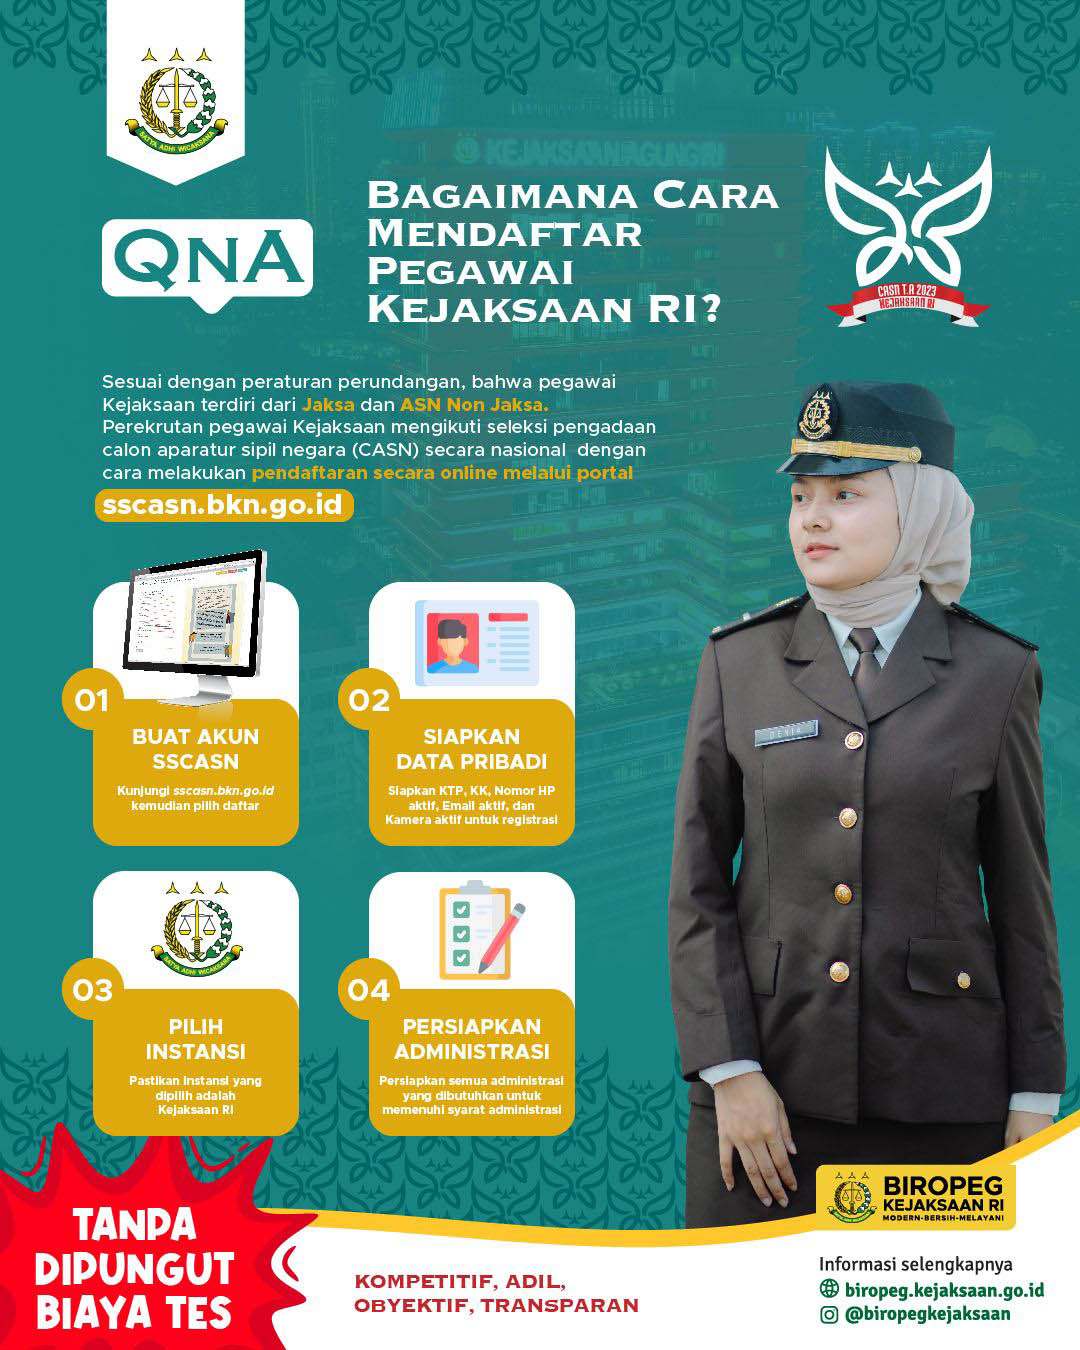 Kejaksaan Republik Indonesia Sudah Buka Pendaftaran CPNS! Ada 7546 Formasi, Silahkan Download Formulirnya!